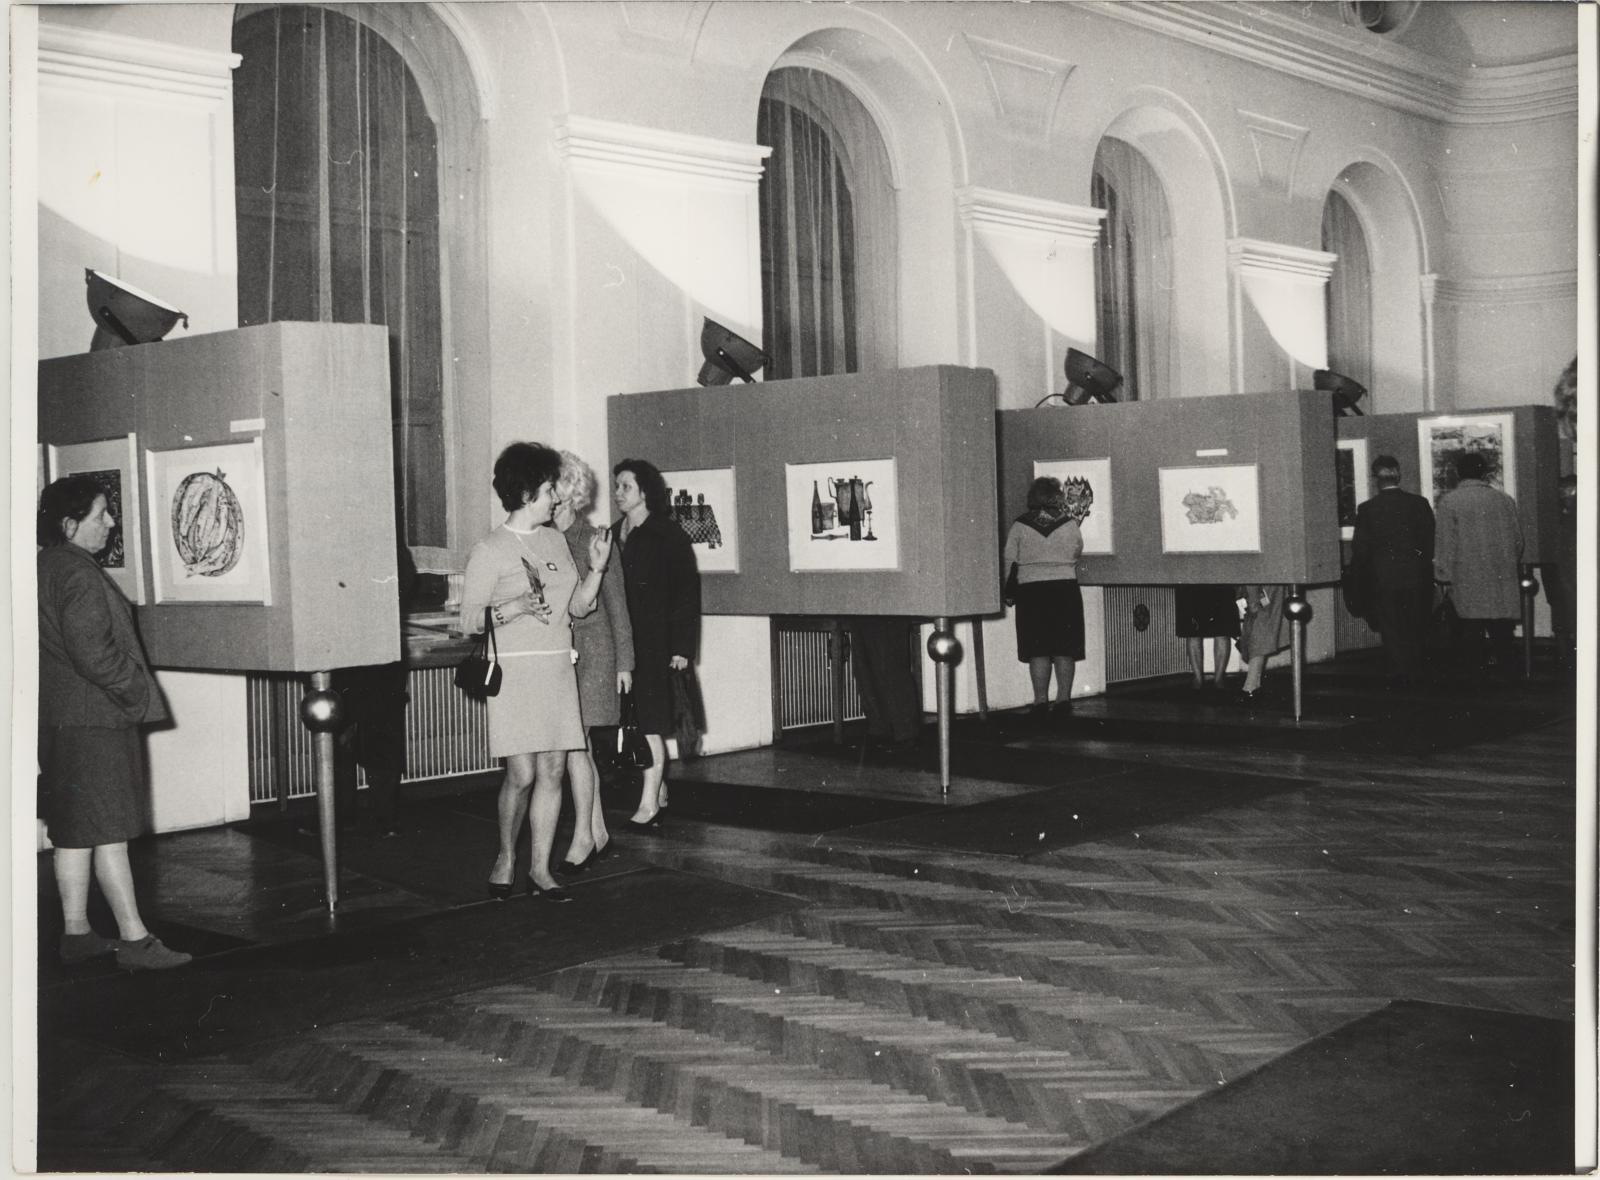 Eesti nõukogude graafika näituse avamine Brno Töölisliikumise Muuseumis 17. nov. 1969. Vaade näitusele.